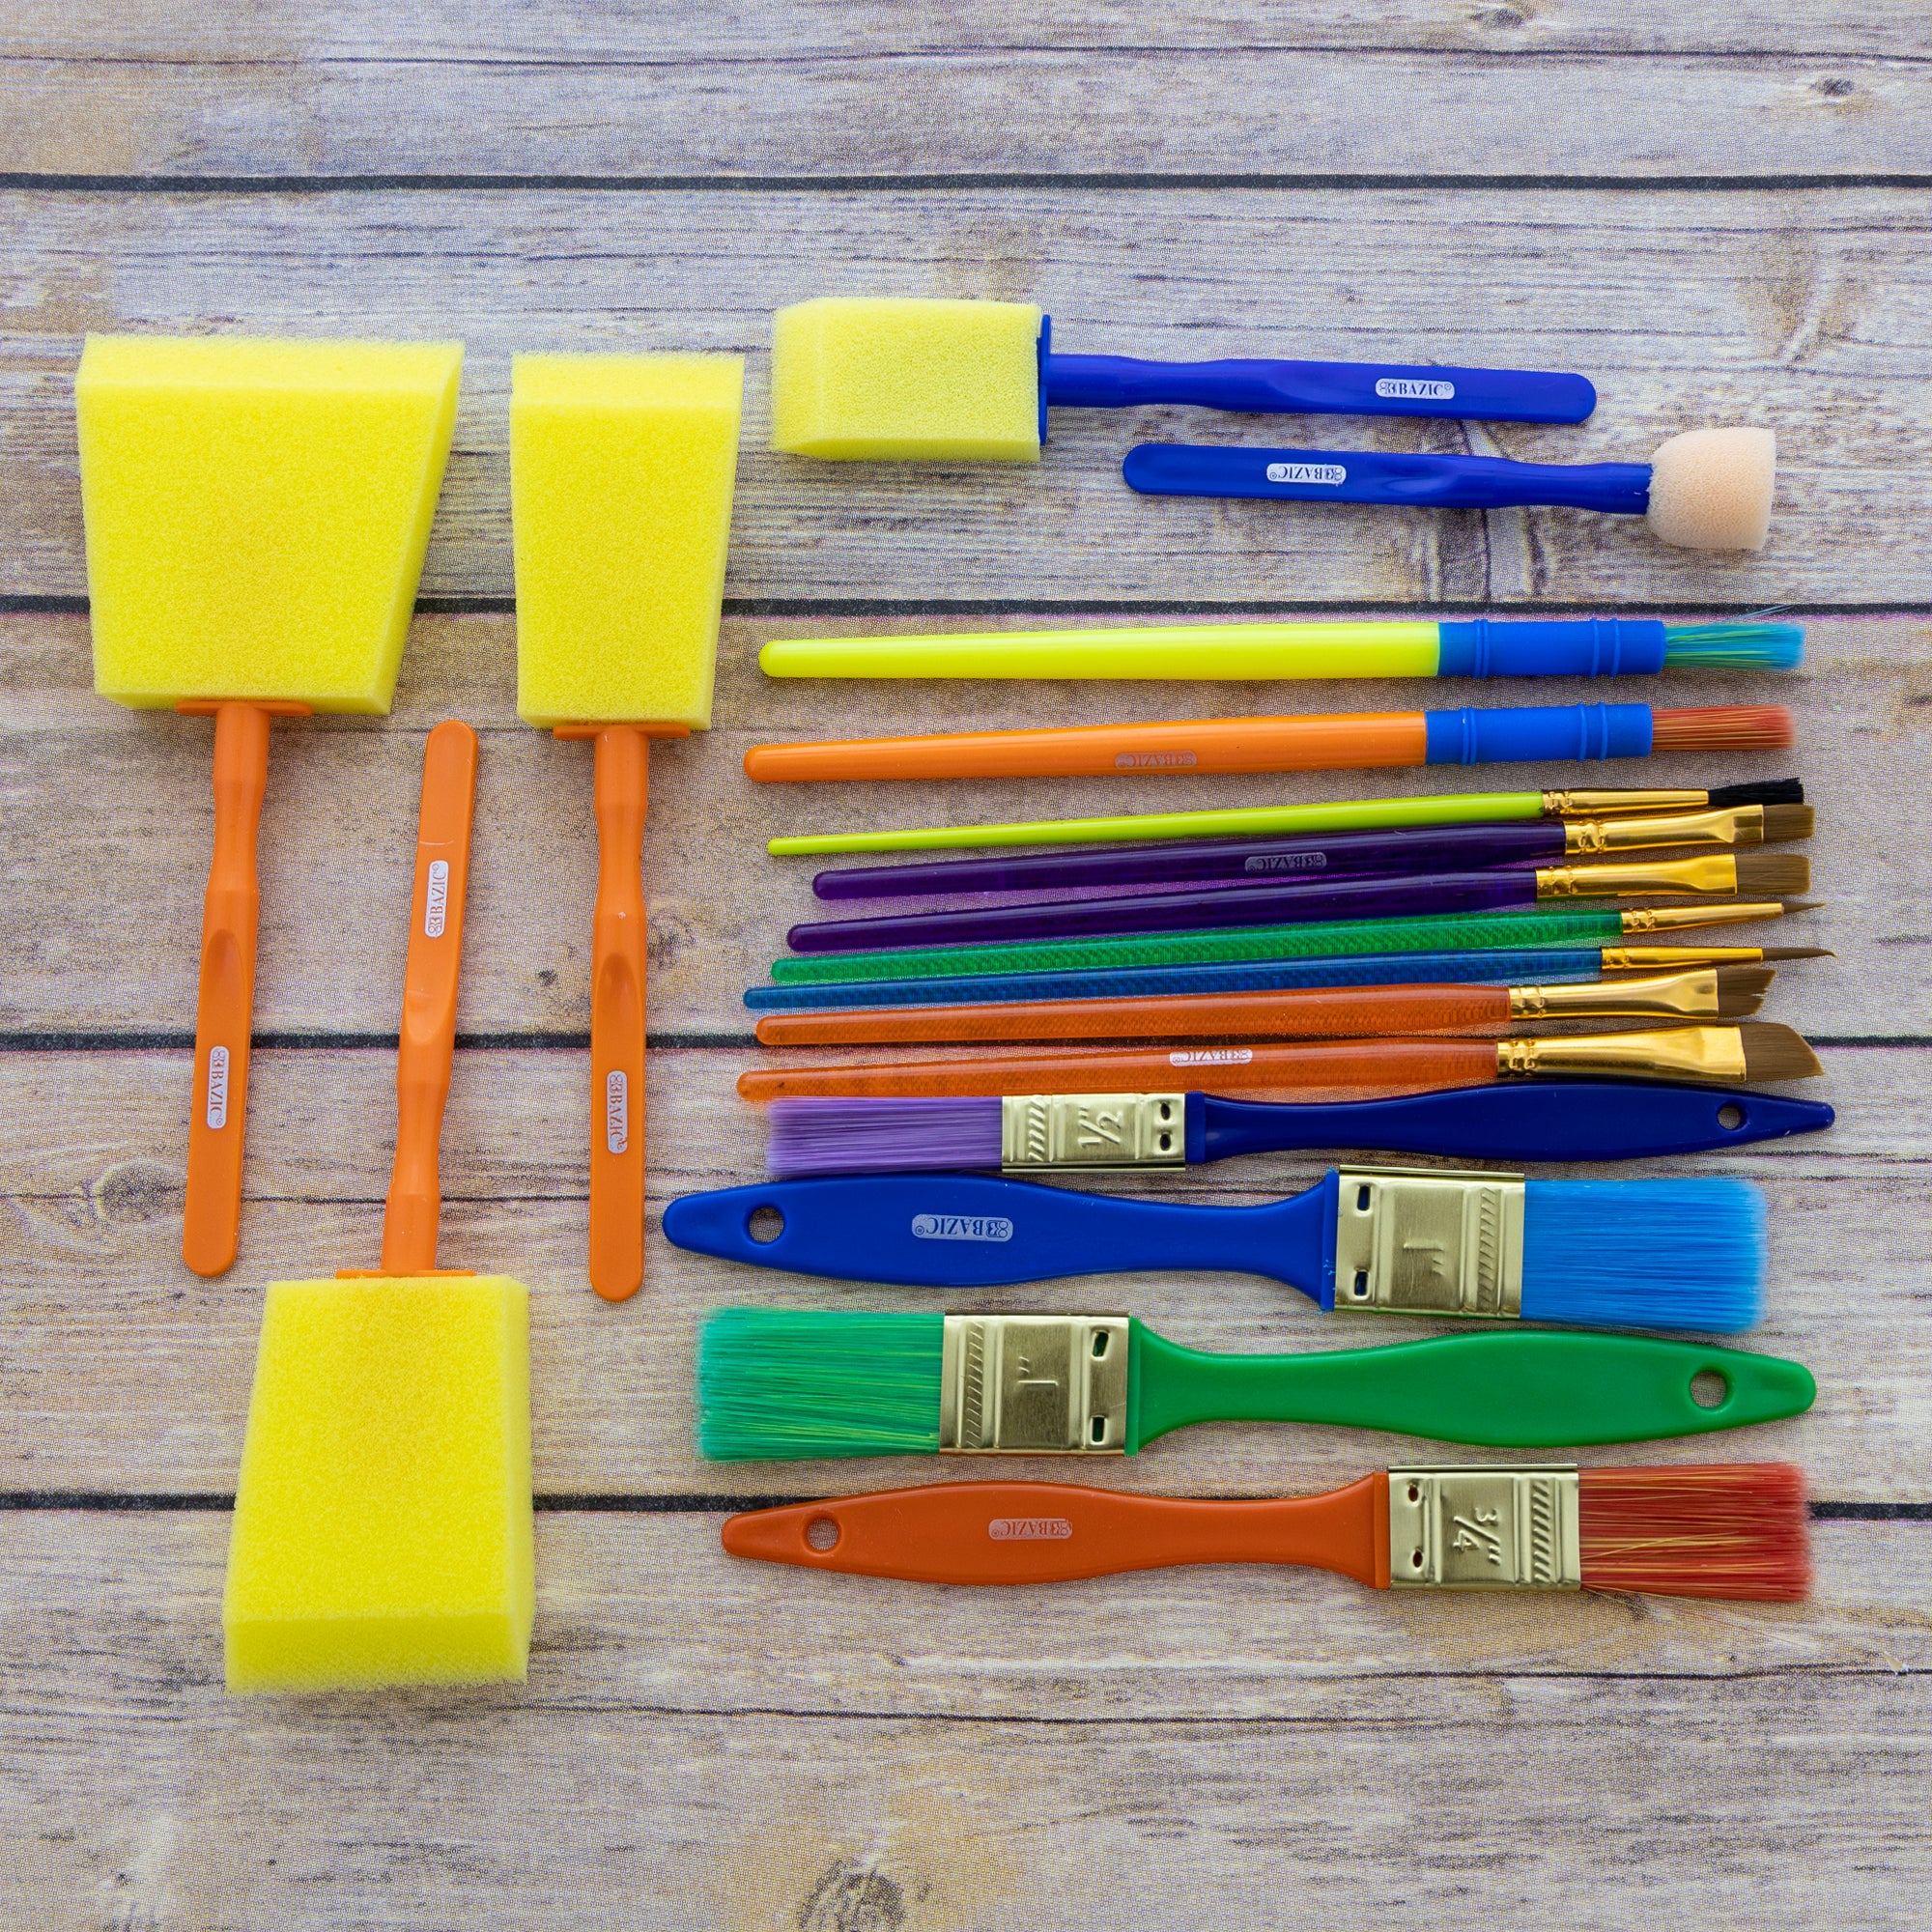 Children's Paint Brushes & Paint Accessories